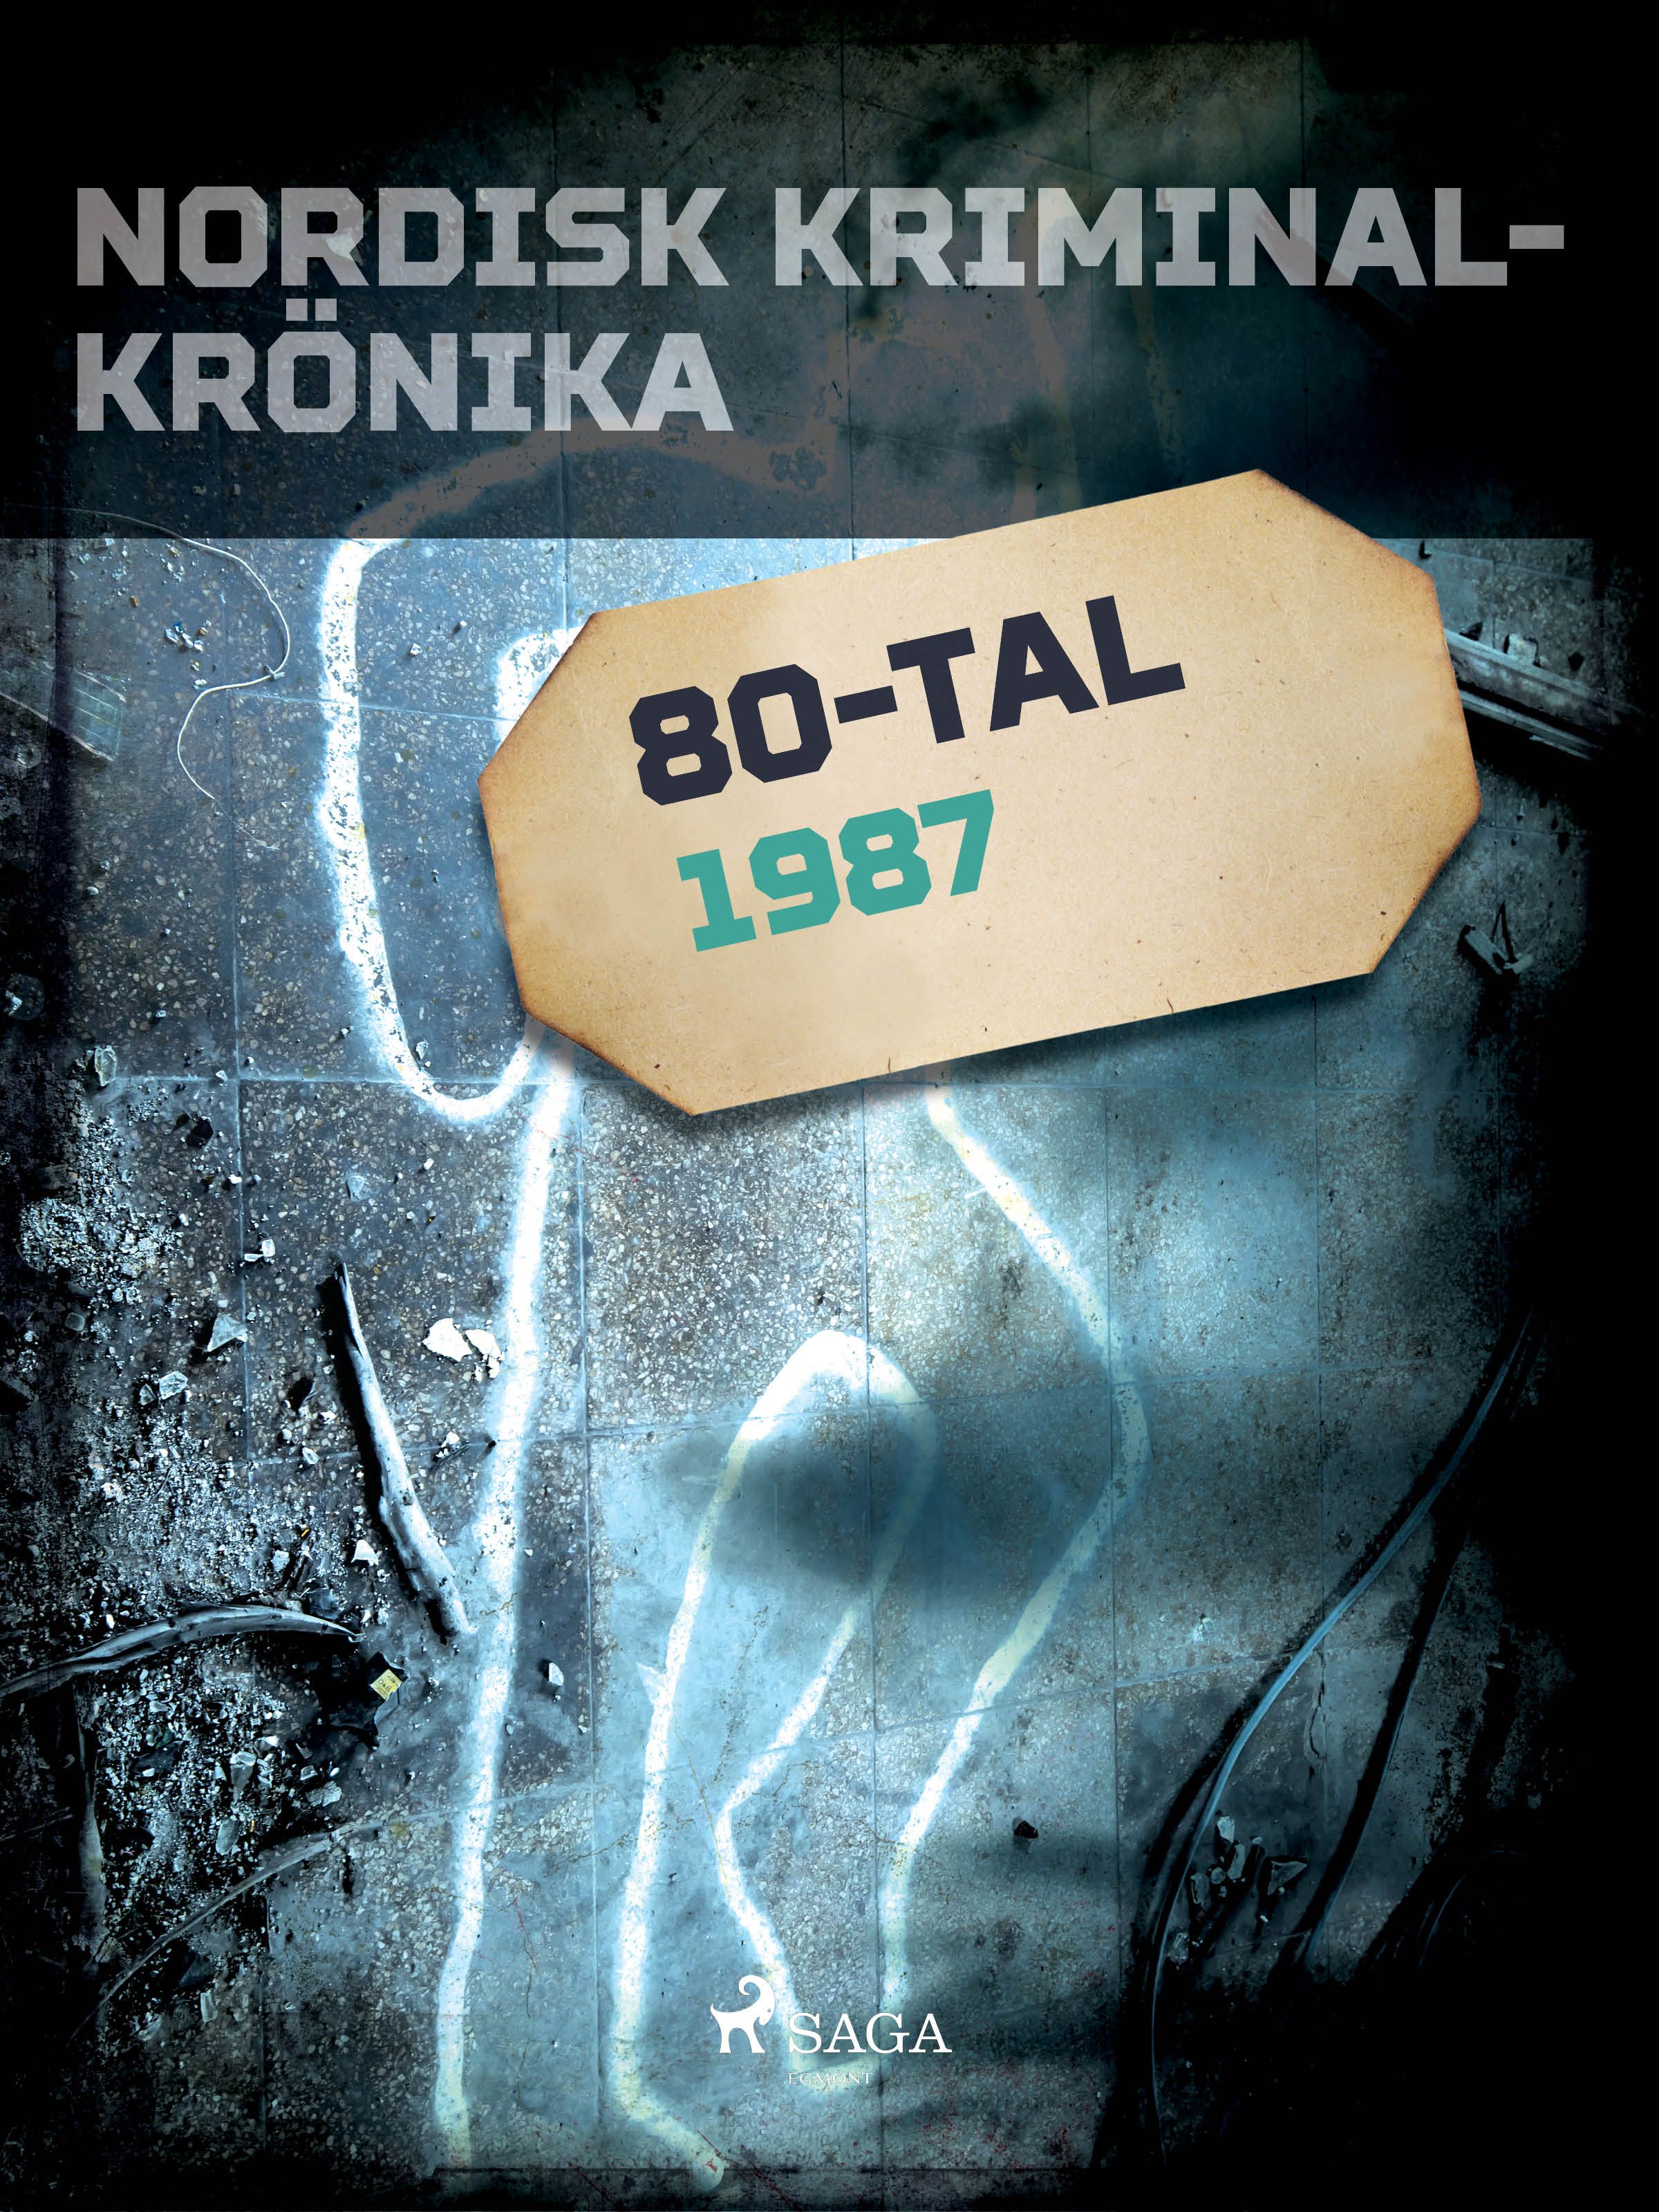 Nordisk kriminalkrönika 1987, e-bok av Diverse